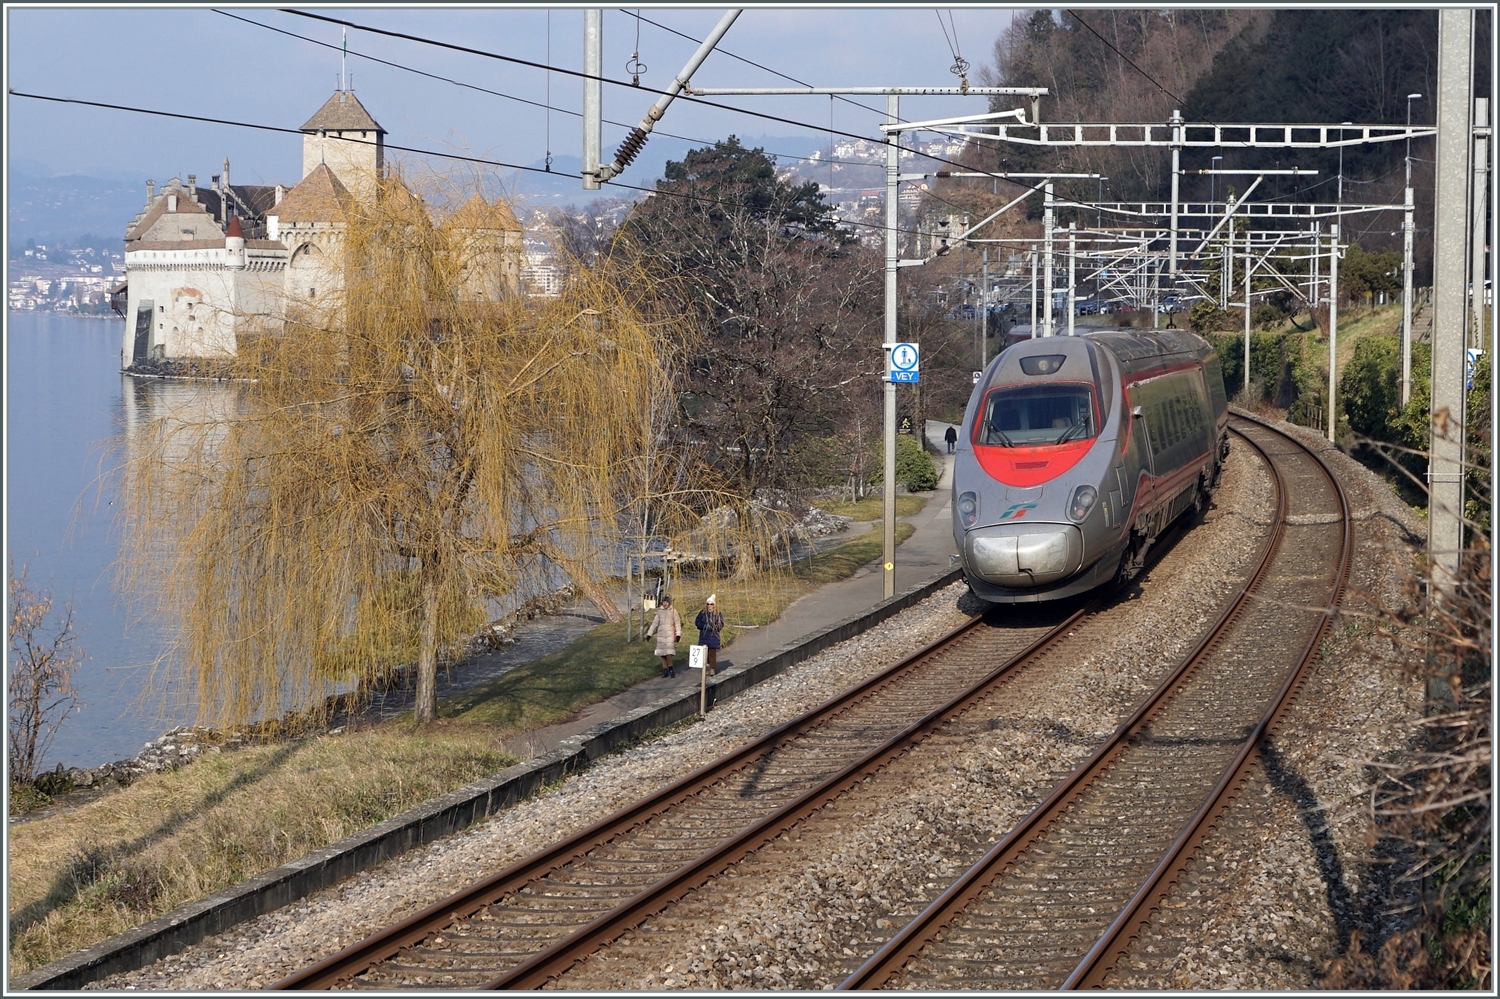 Der FS Trenitalia ETR 610 004 ist auf der Fahrt von Milano nach Genève kurz und fährt dabei beim Château de Chillon vorbei.

8. Februar 2023